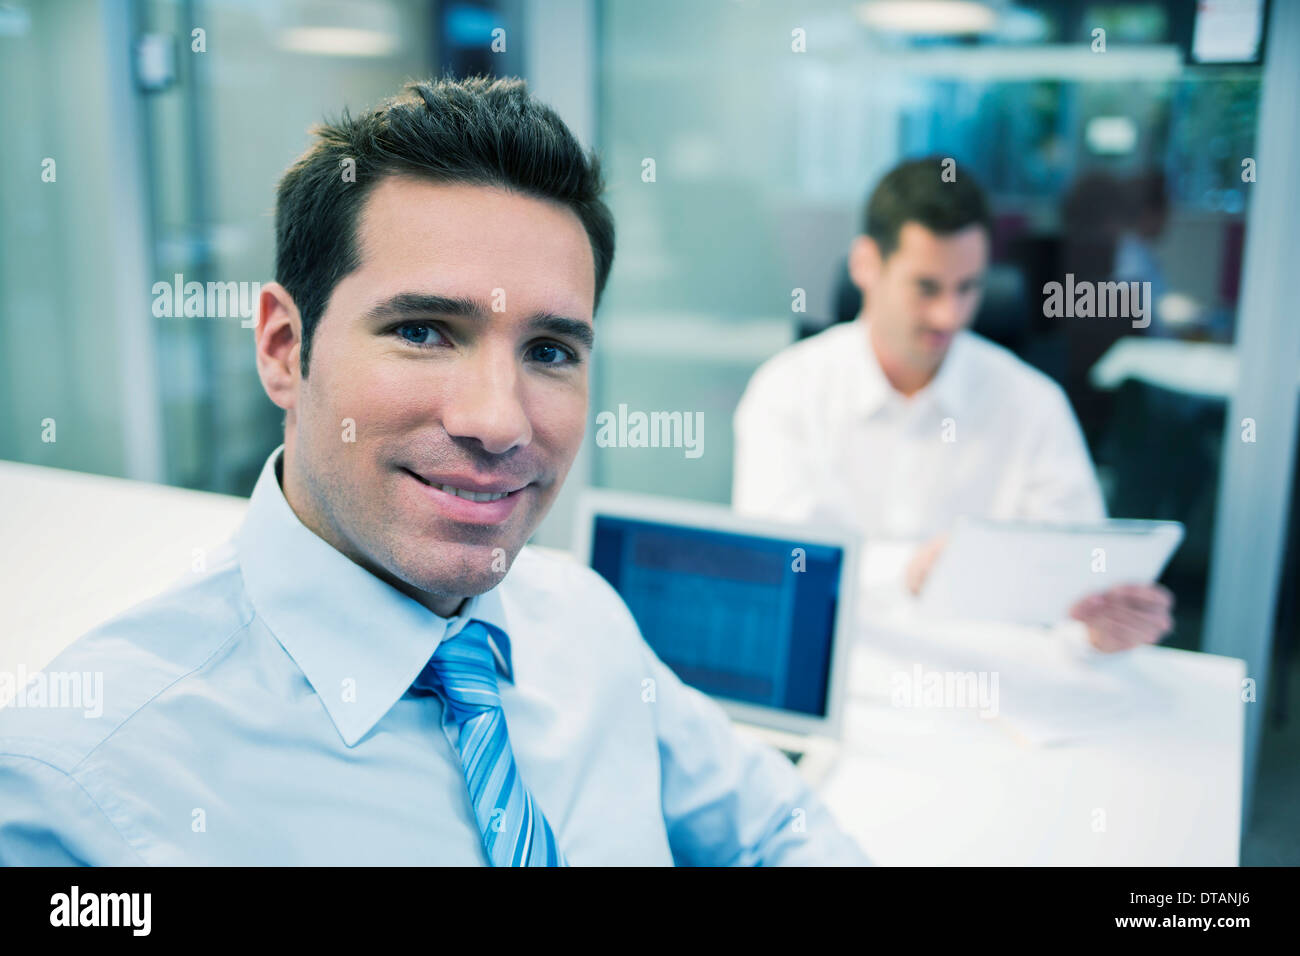 Porträt von lächelnd Geschäftsmann im Büro, auf der Kamera Suche Stockfoto